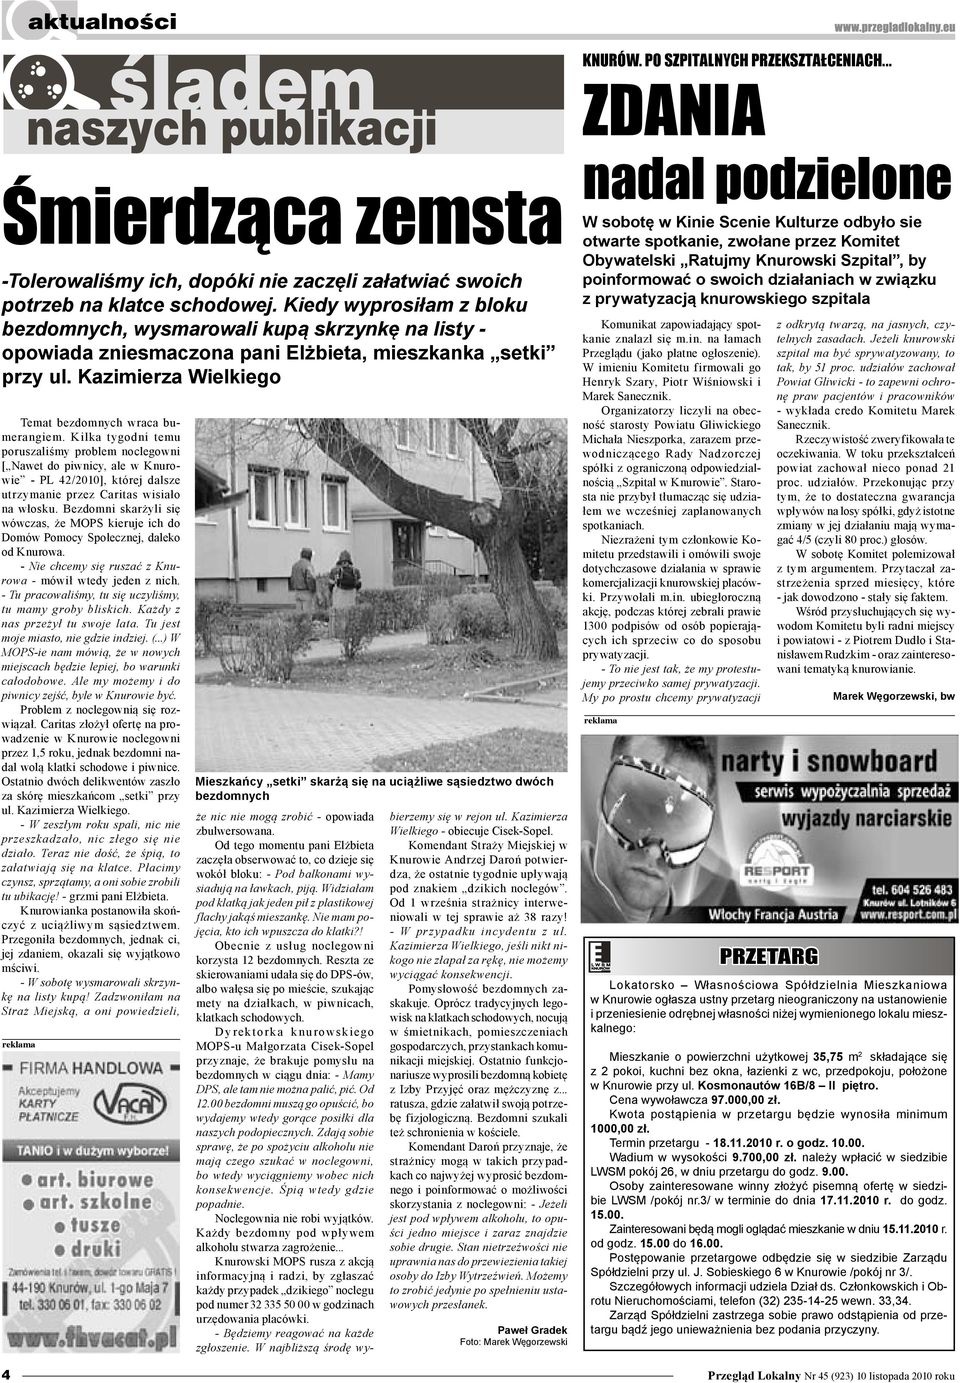 Kilka tygodni temu poruszaliśmy problem noclegowni [ Nawet do piwnicy, ale w Knurowie - PL 42/2010], której dalsze utrzymanie przez Caritas wisiało na włosku.